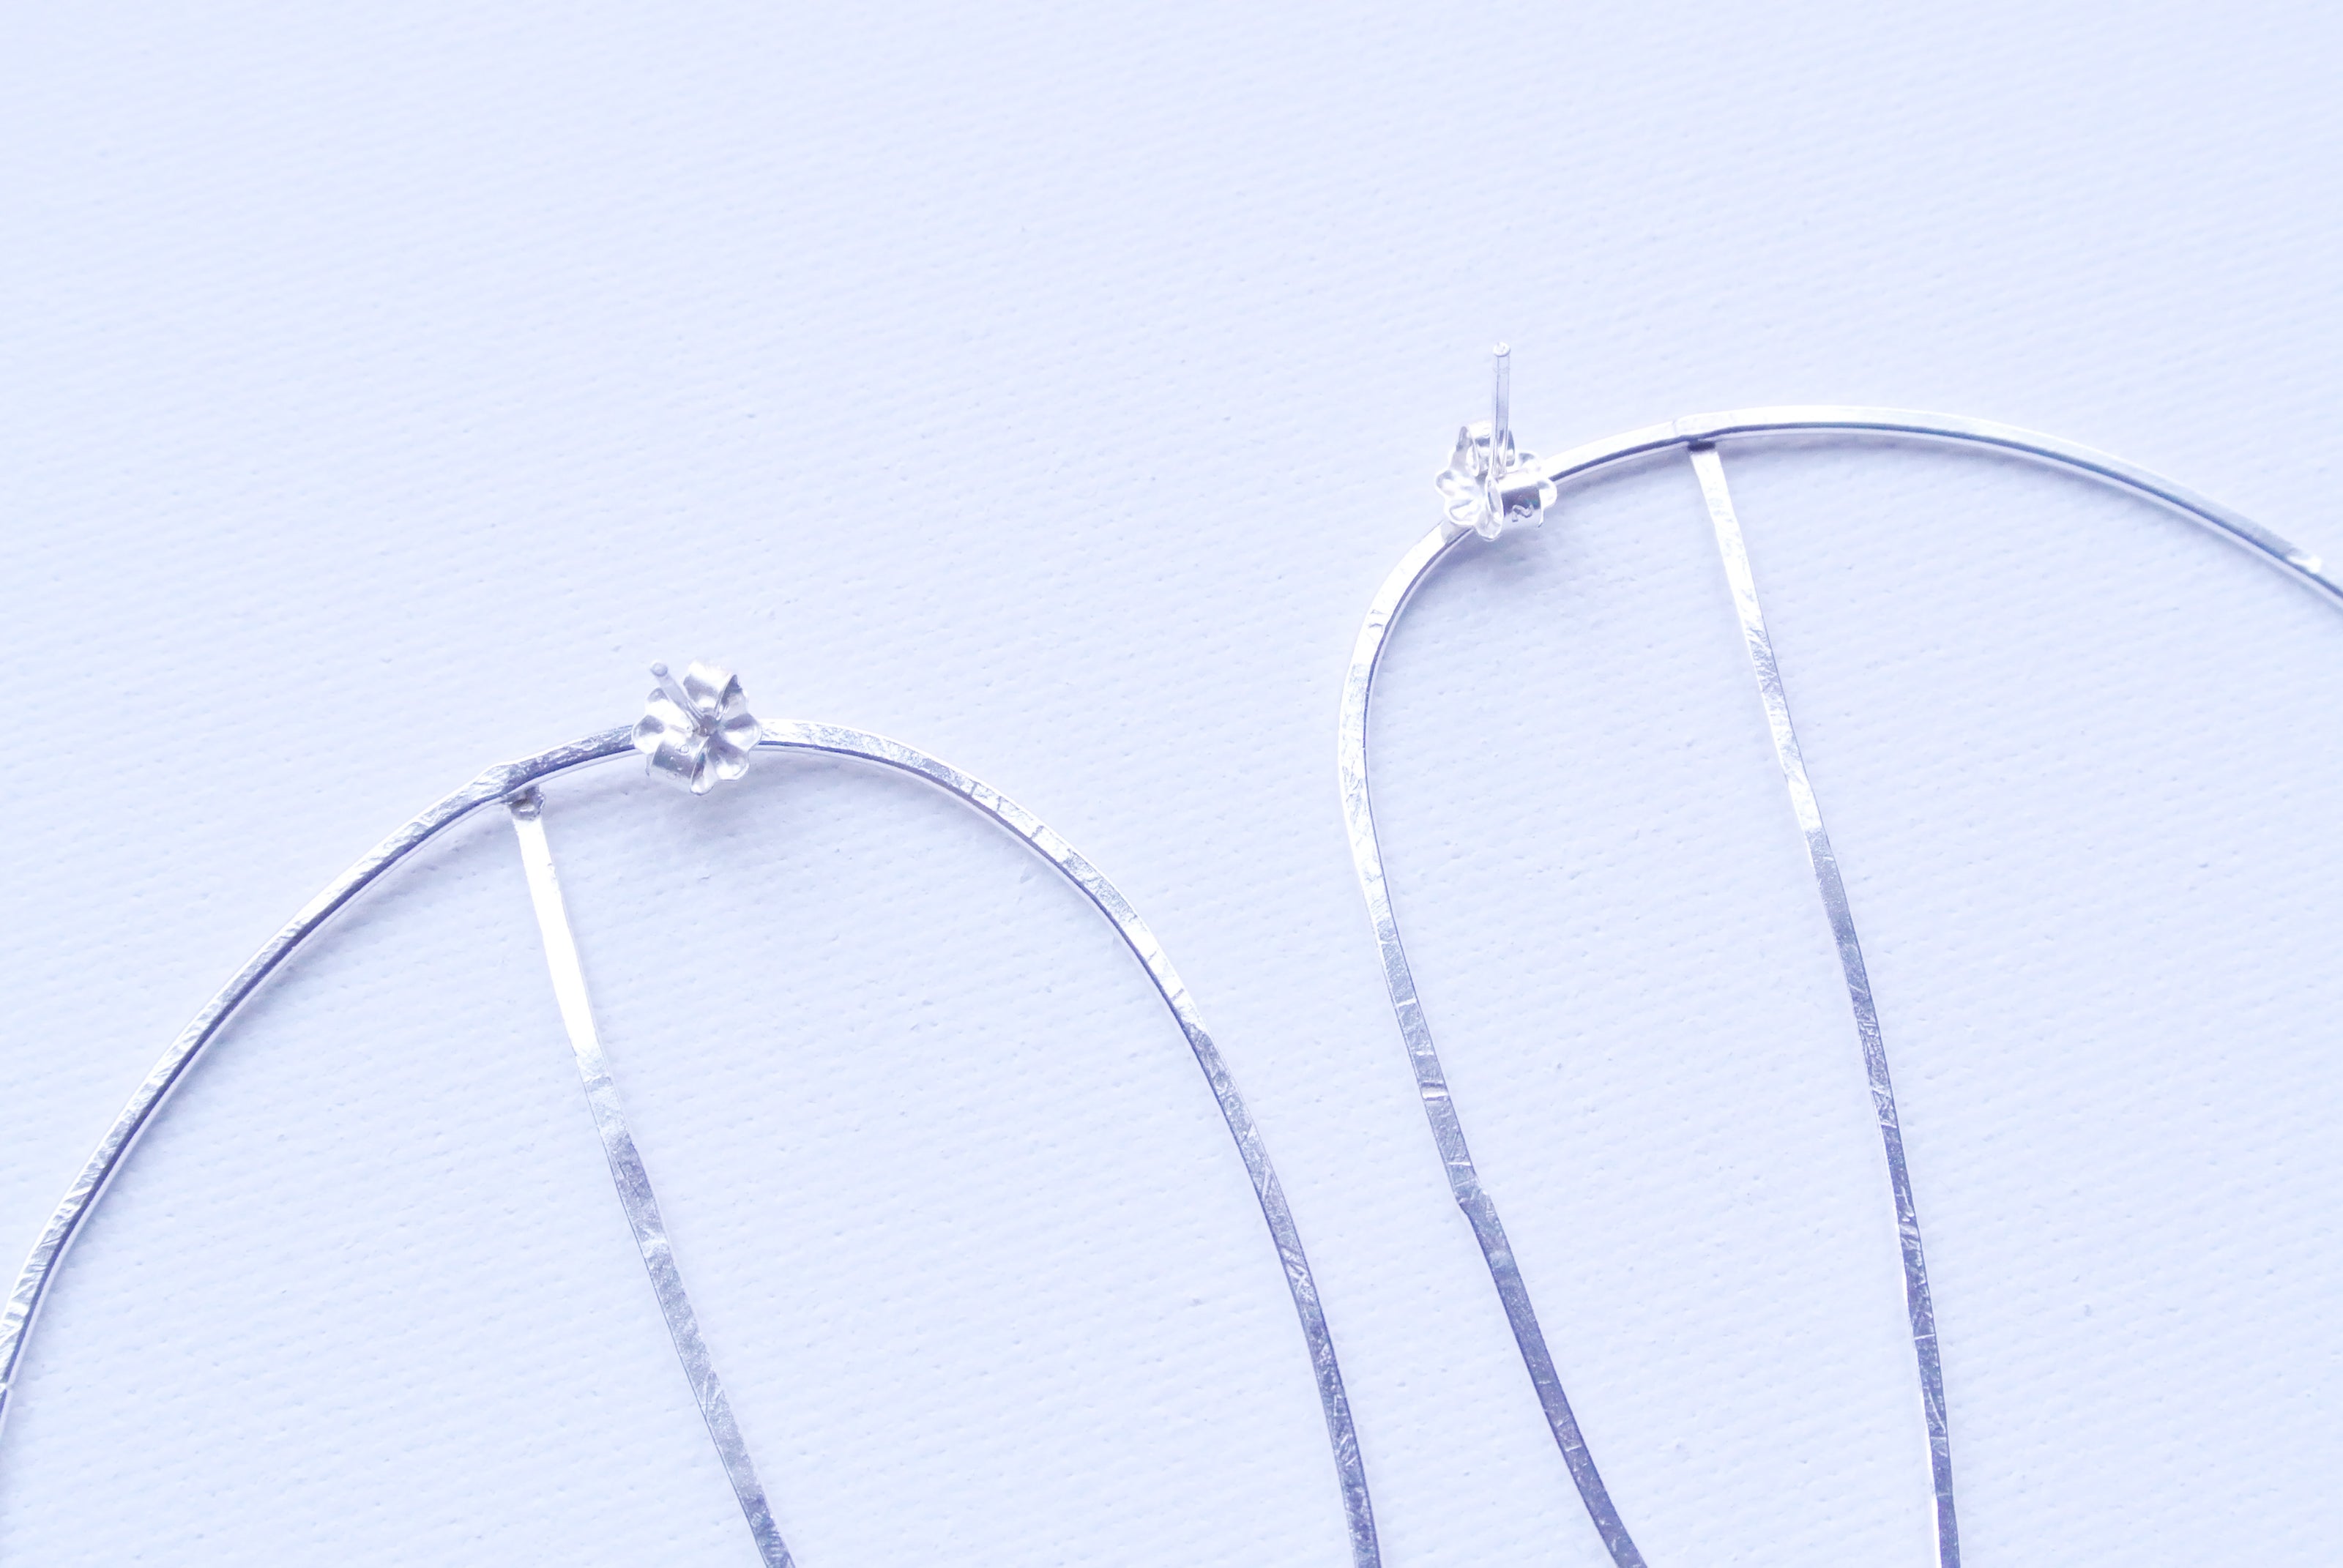 Abstract Statement Hoop Earrings - Argentium Silver - Nickel Free